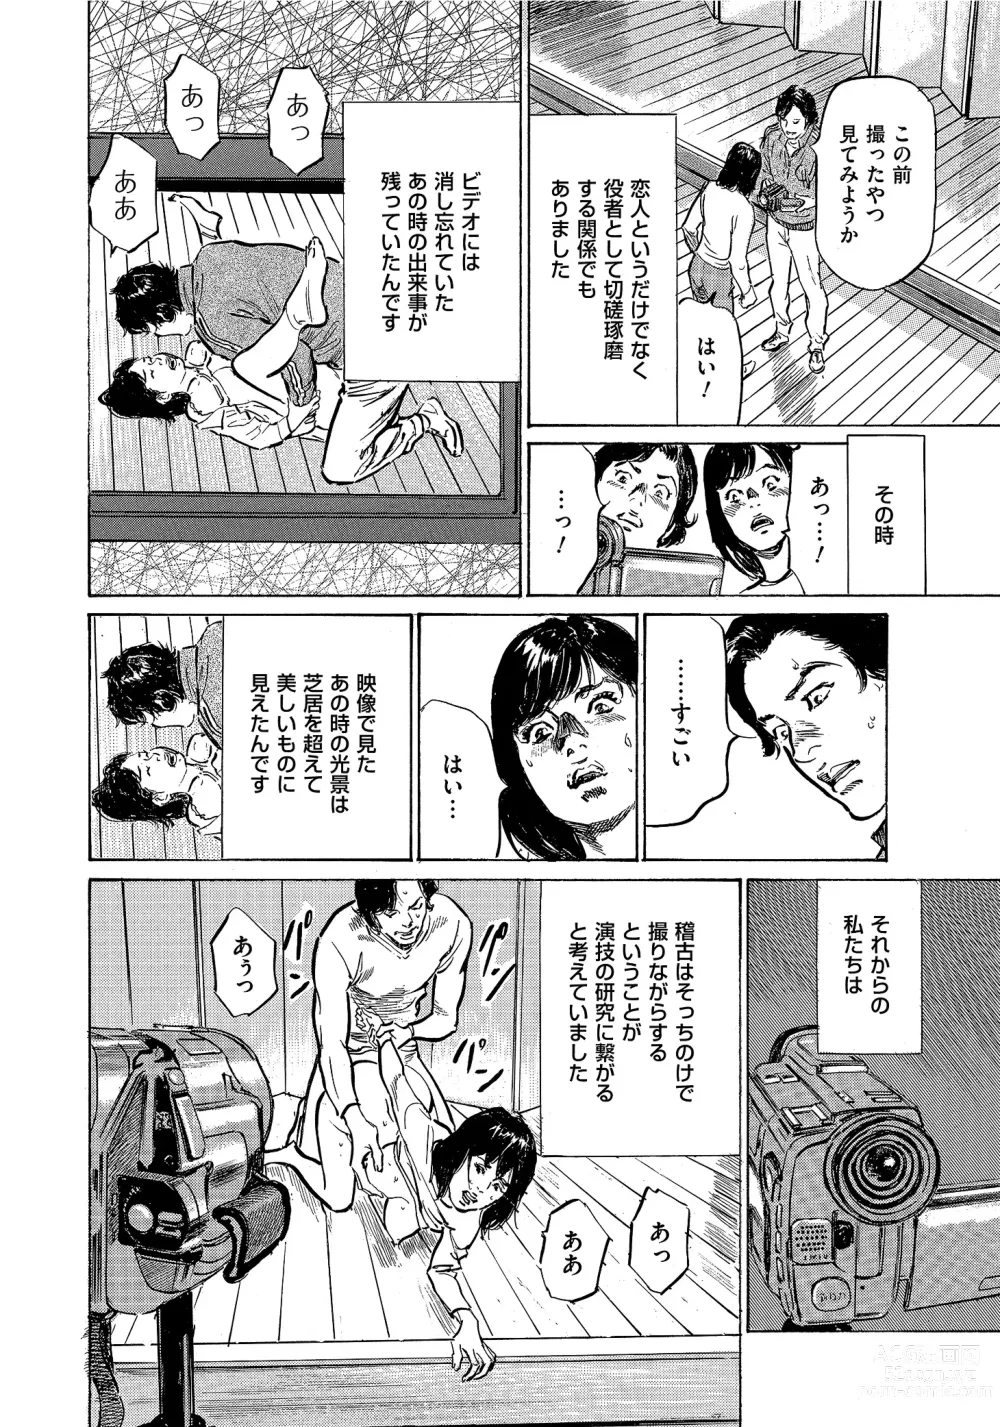 Page 251 of manga Saikou ni Toroketa Honki de Honto no Hanashi 16 episodes